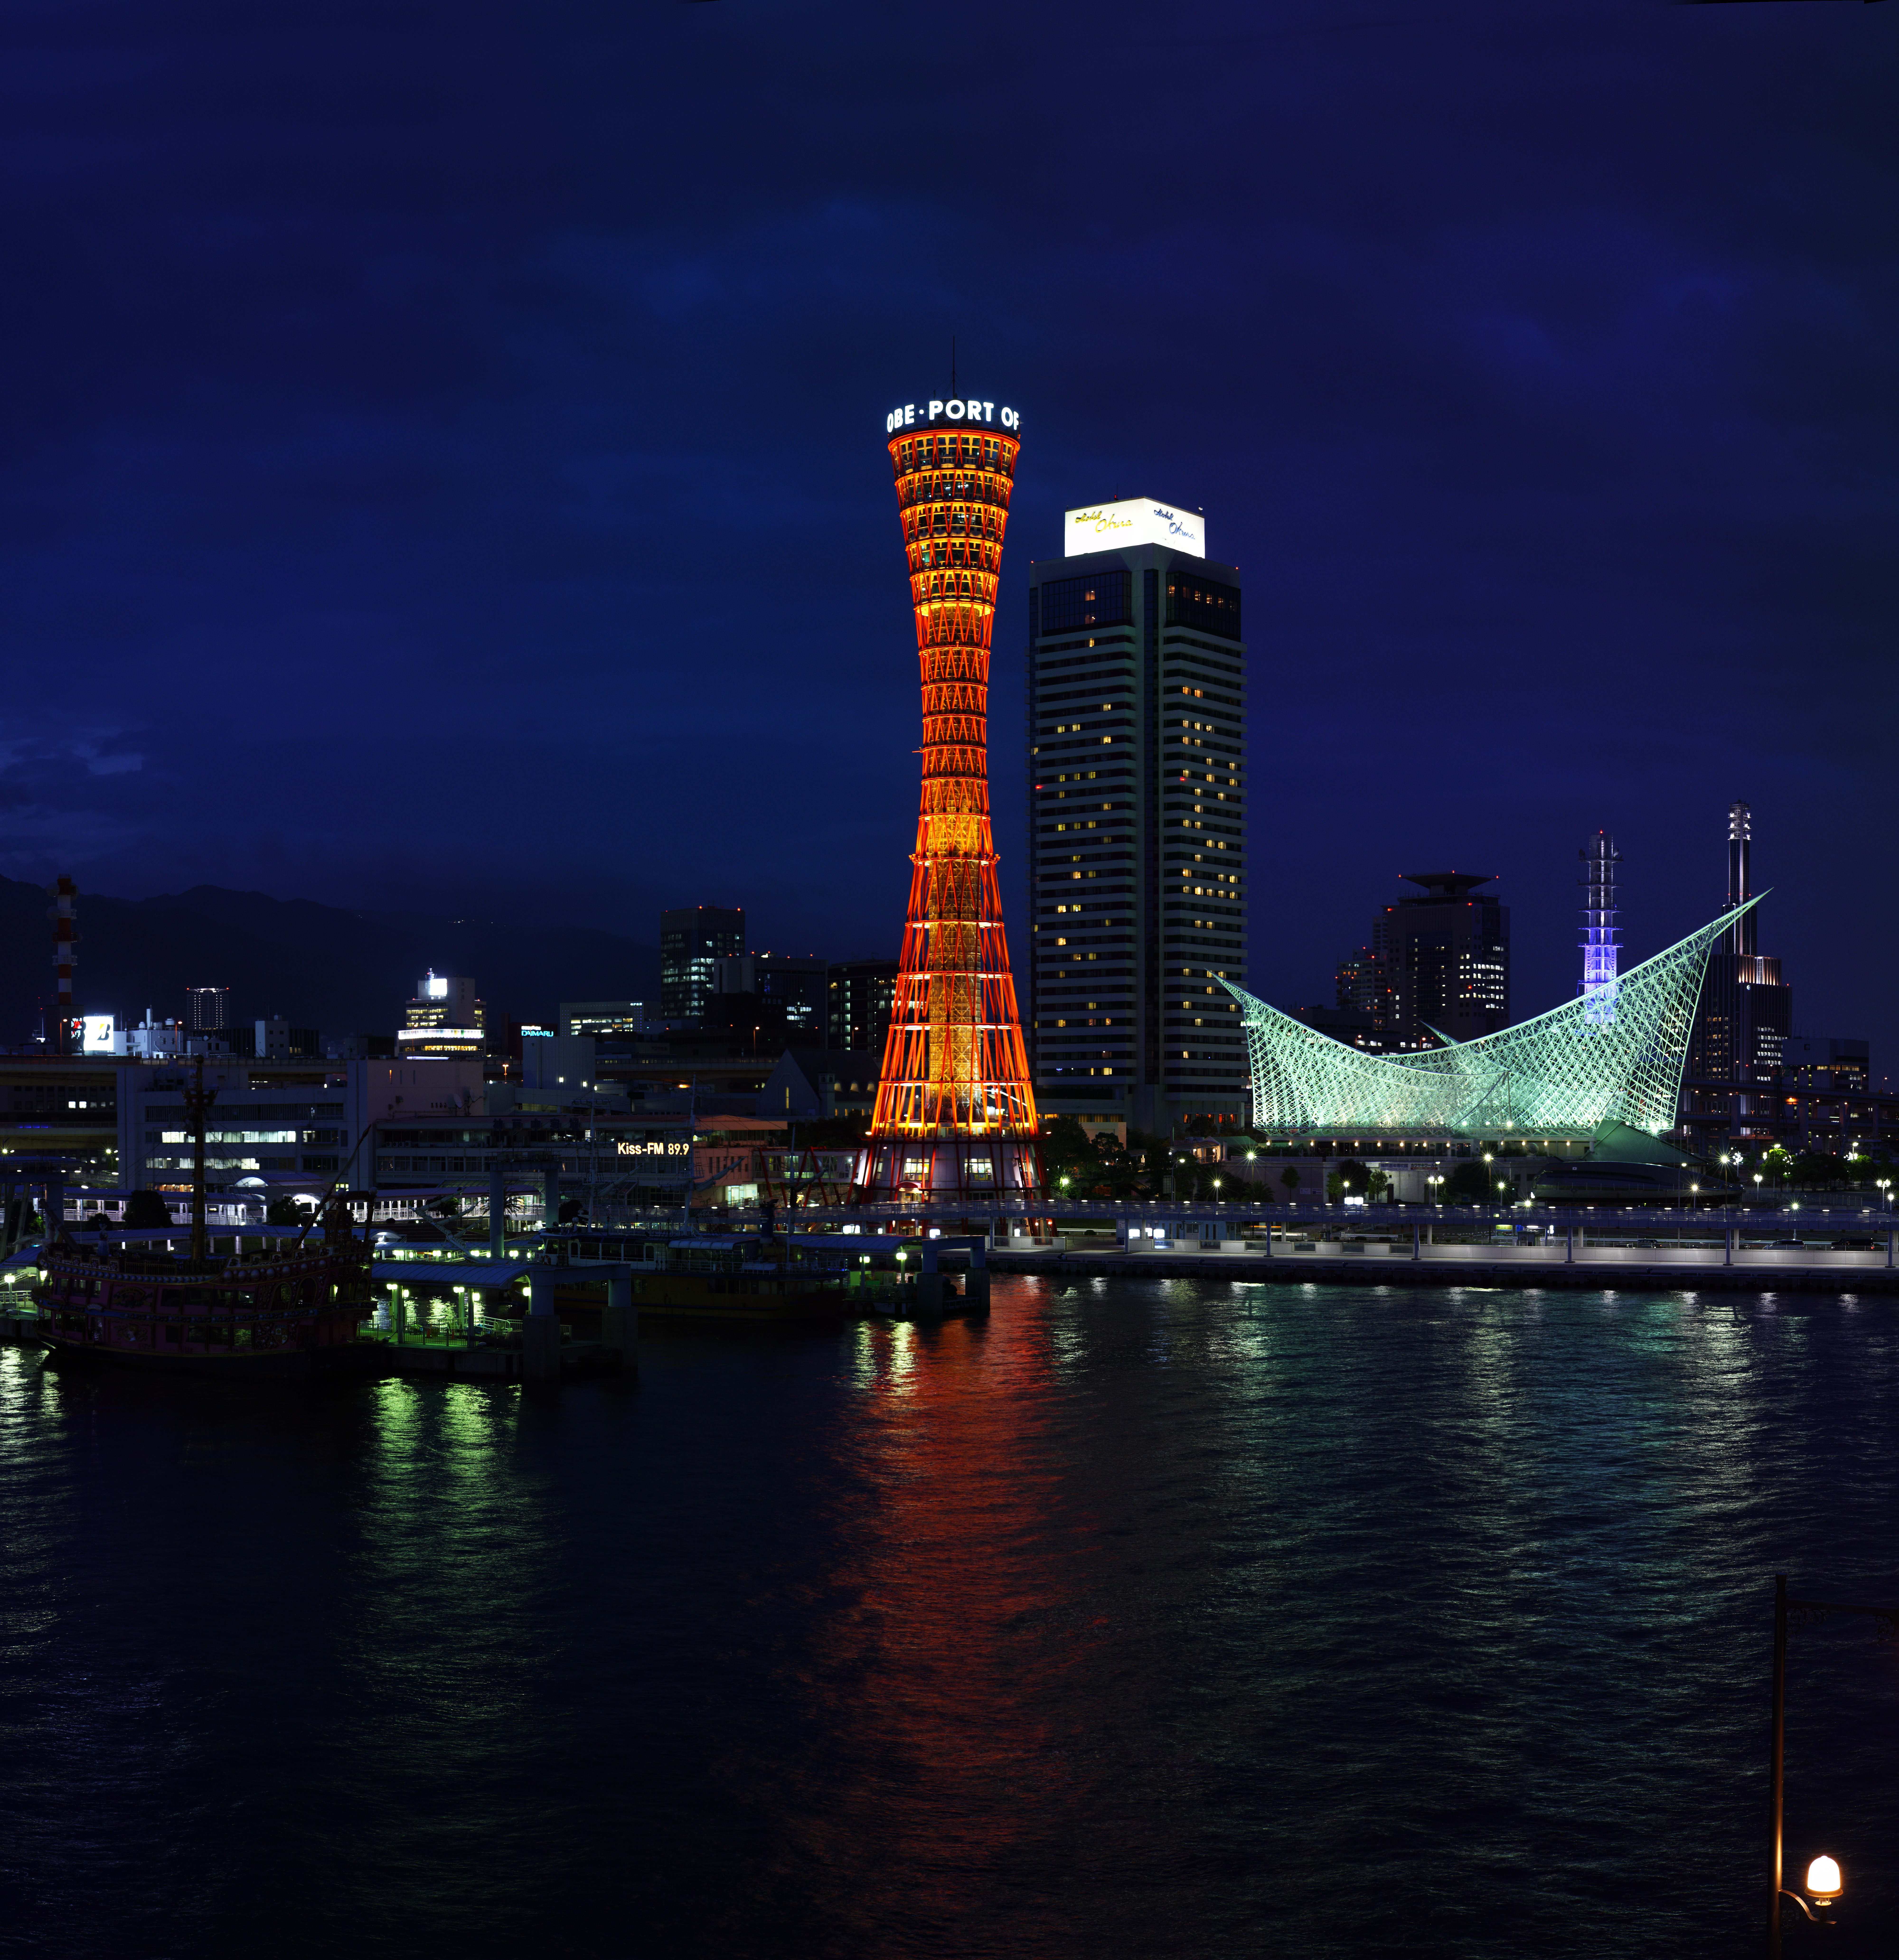 fotografia, materiale, libero il panorama, dipinga, fotografia di scorta,Kobe il porto vista serale, porto, la torre di porto, barca di piacere, attrazione turistica